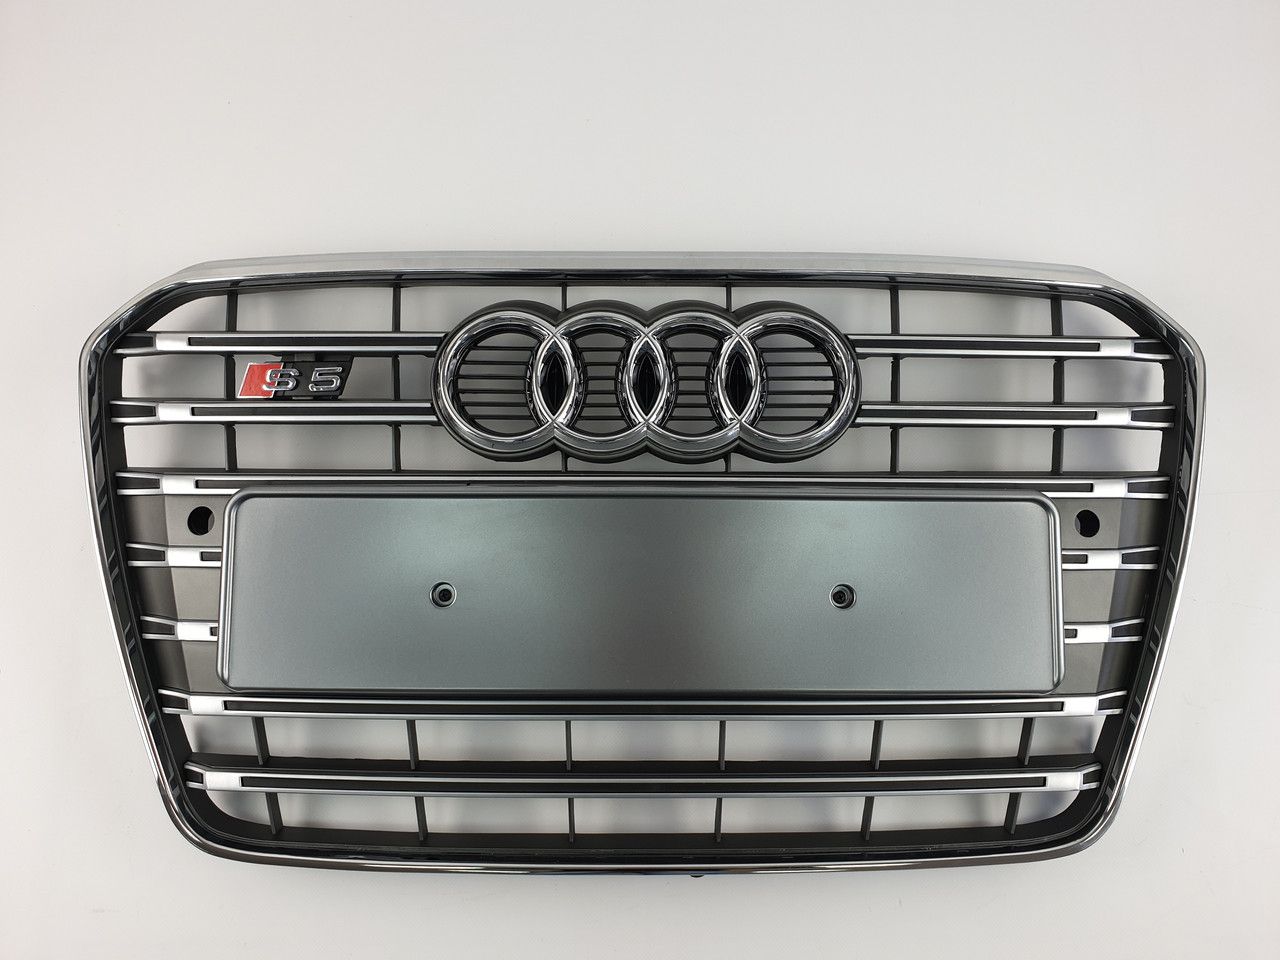 Решетка радиатора Audi A5 2011-2016 Серая с хромомS-Line